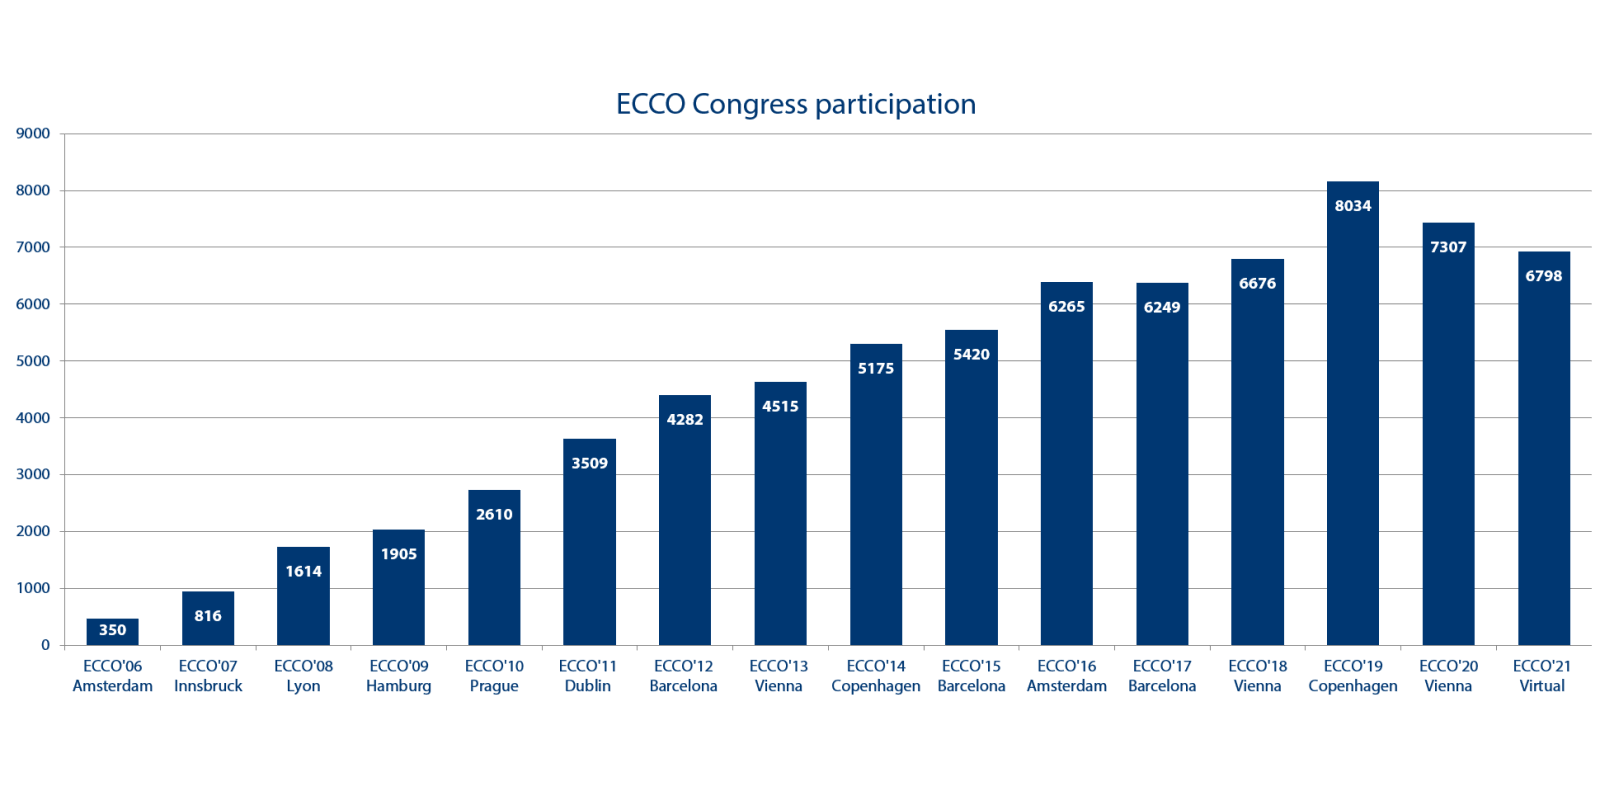 ECCO’21 Virtual - Congress participants 6798